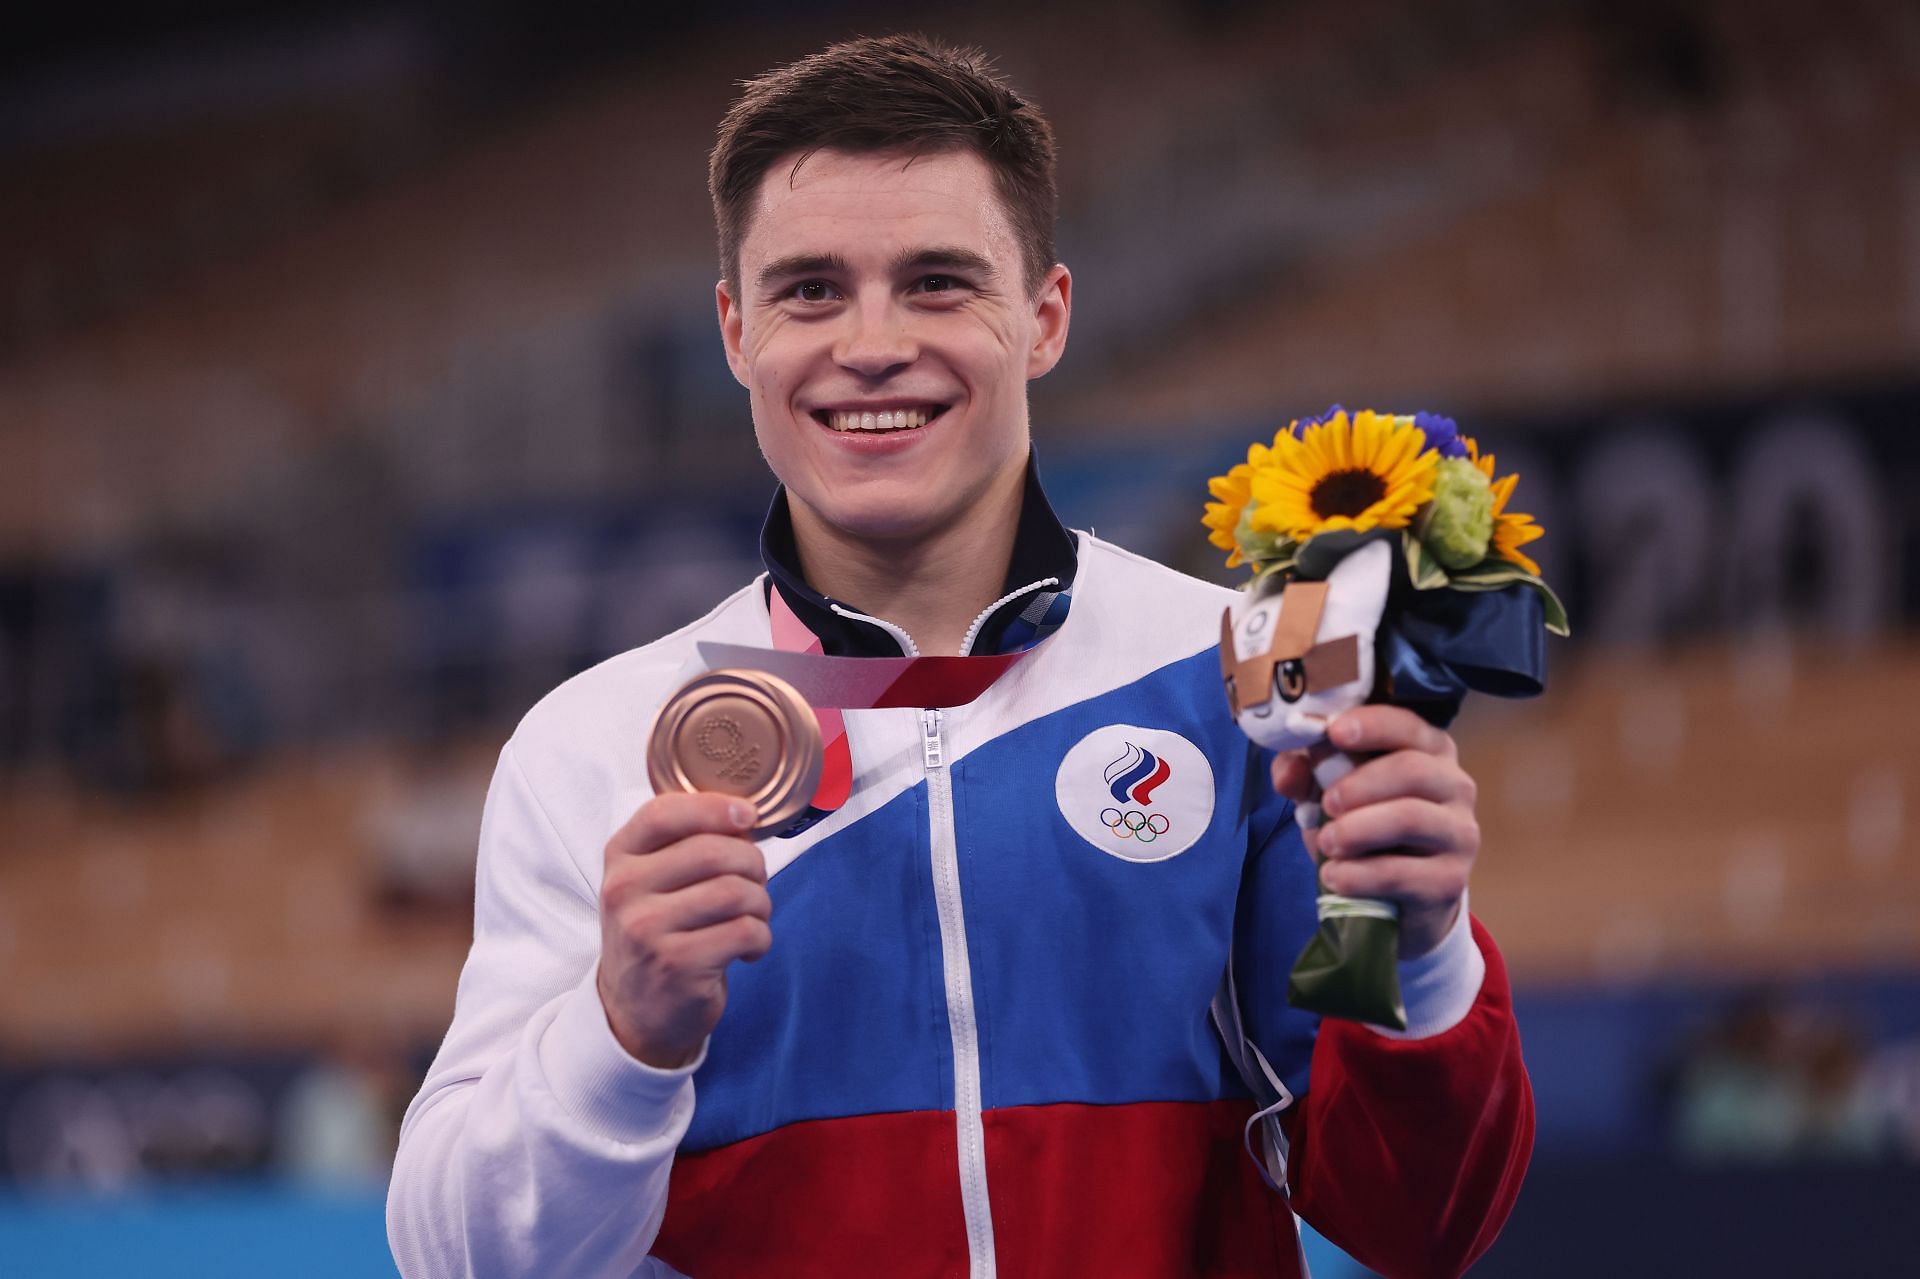 Nikita Nagornyy with his gold medal at the Tokyo Olympics